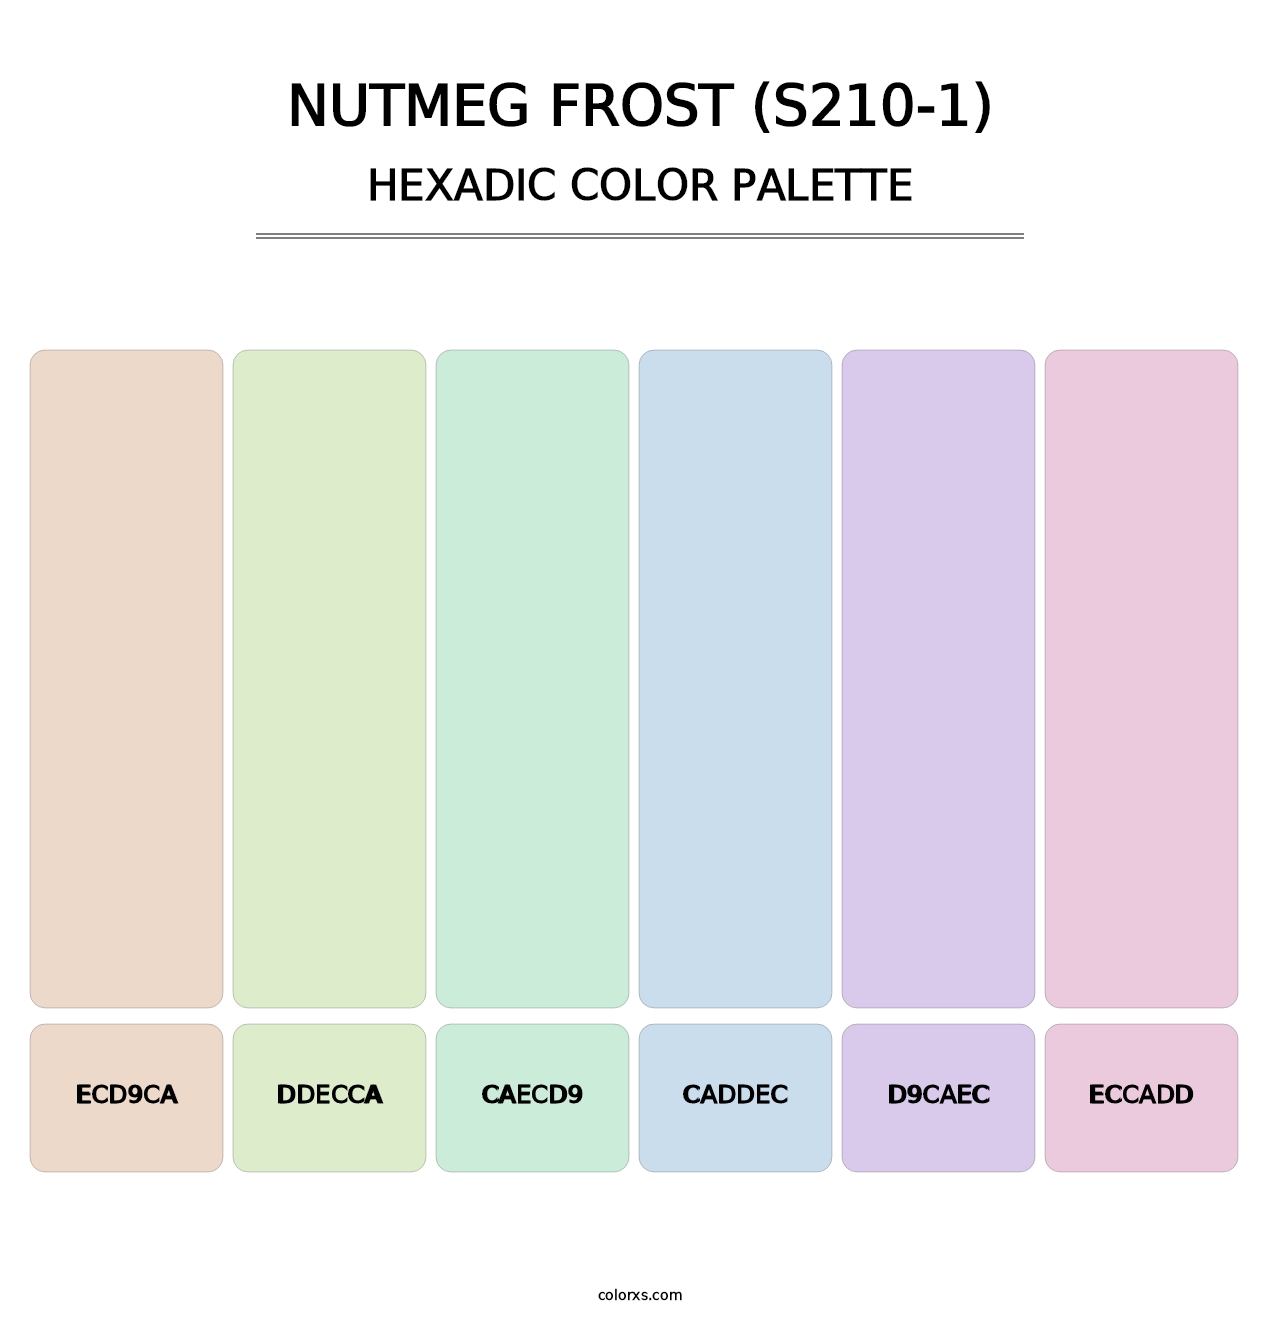 Nutmeg Frost (S210-1) - Hexadic Color Palette